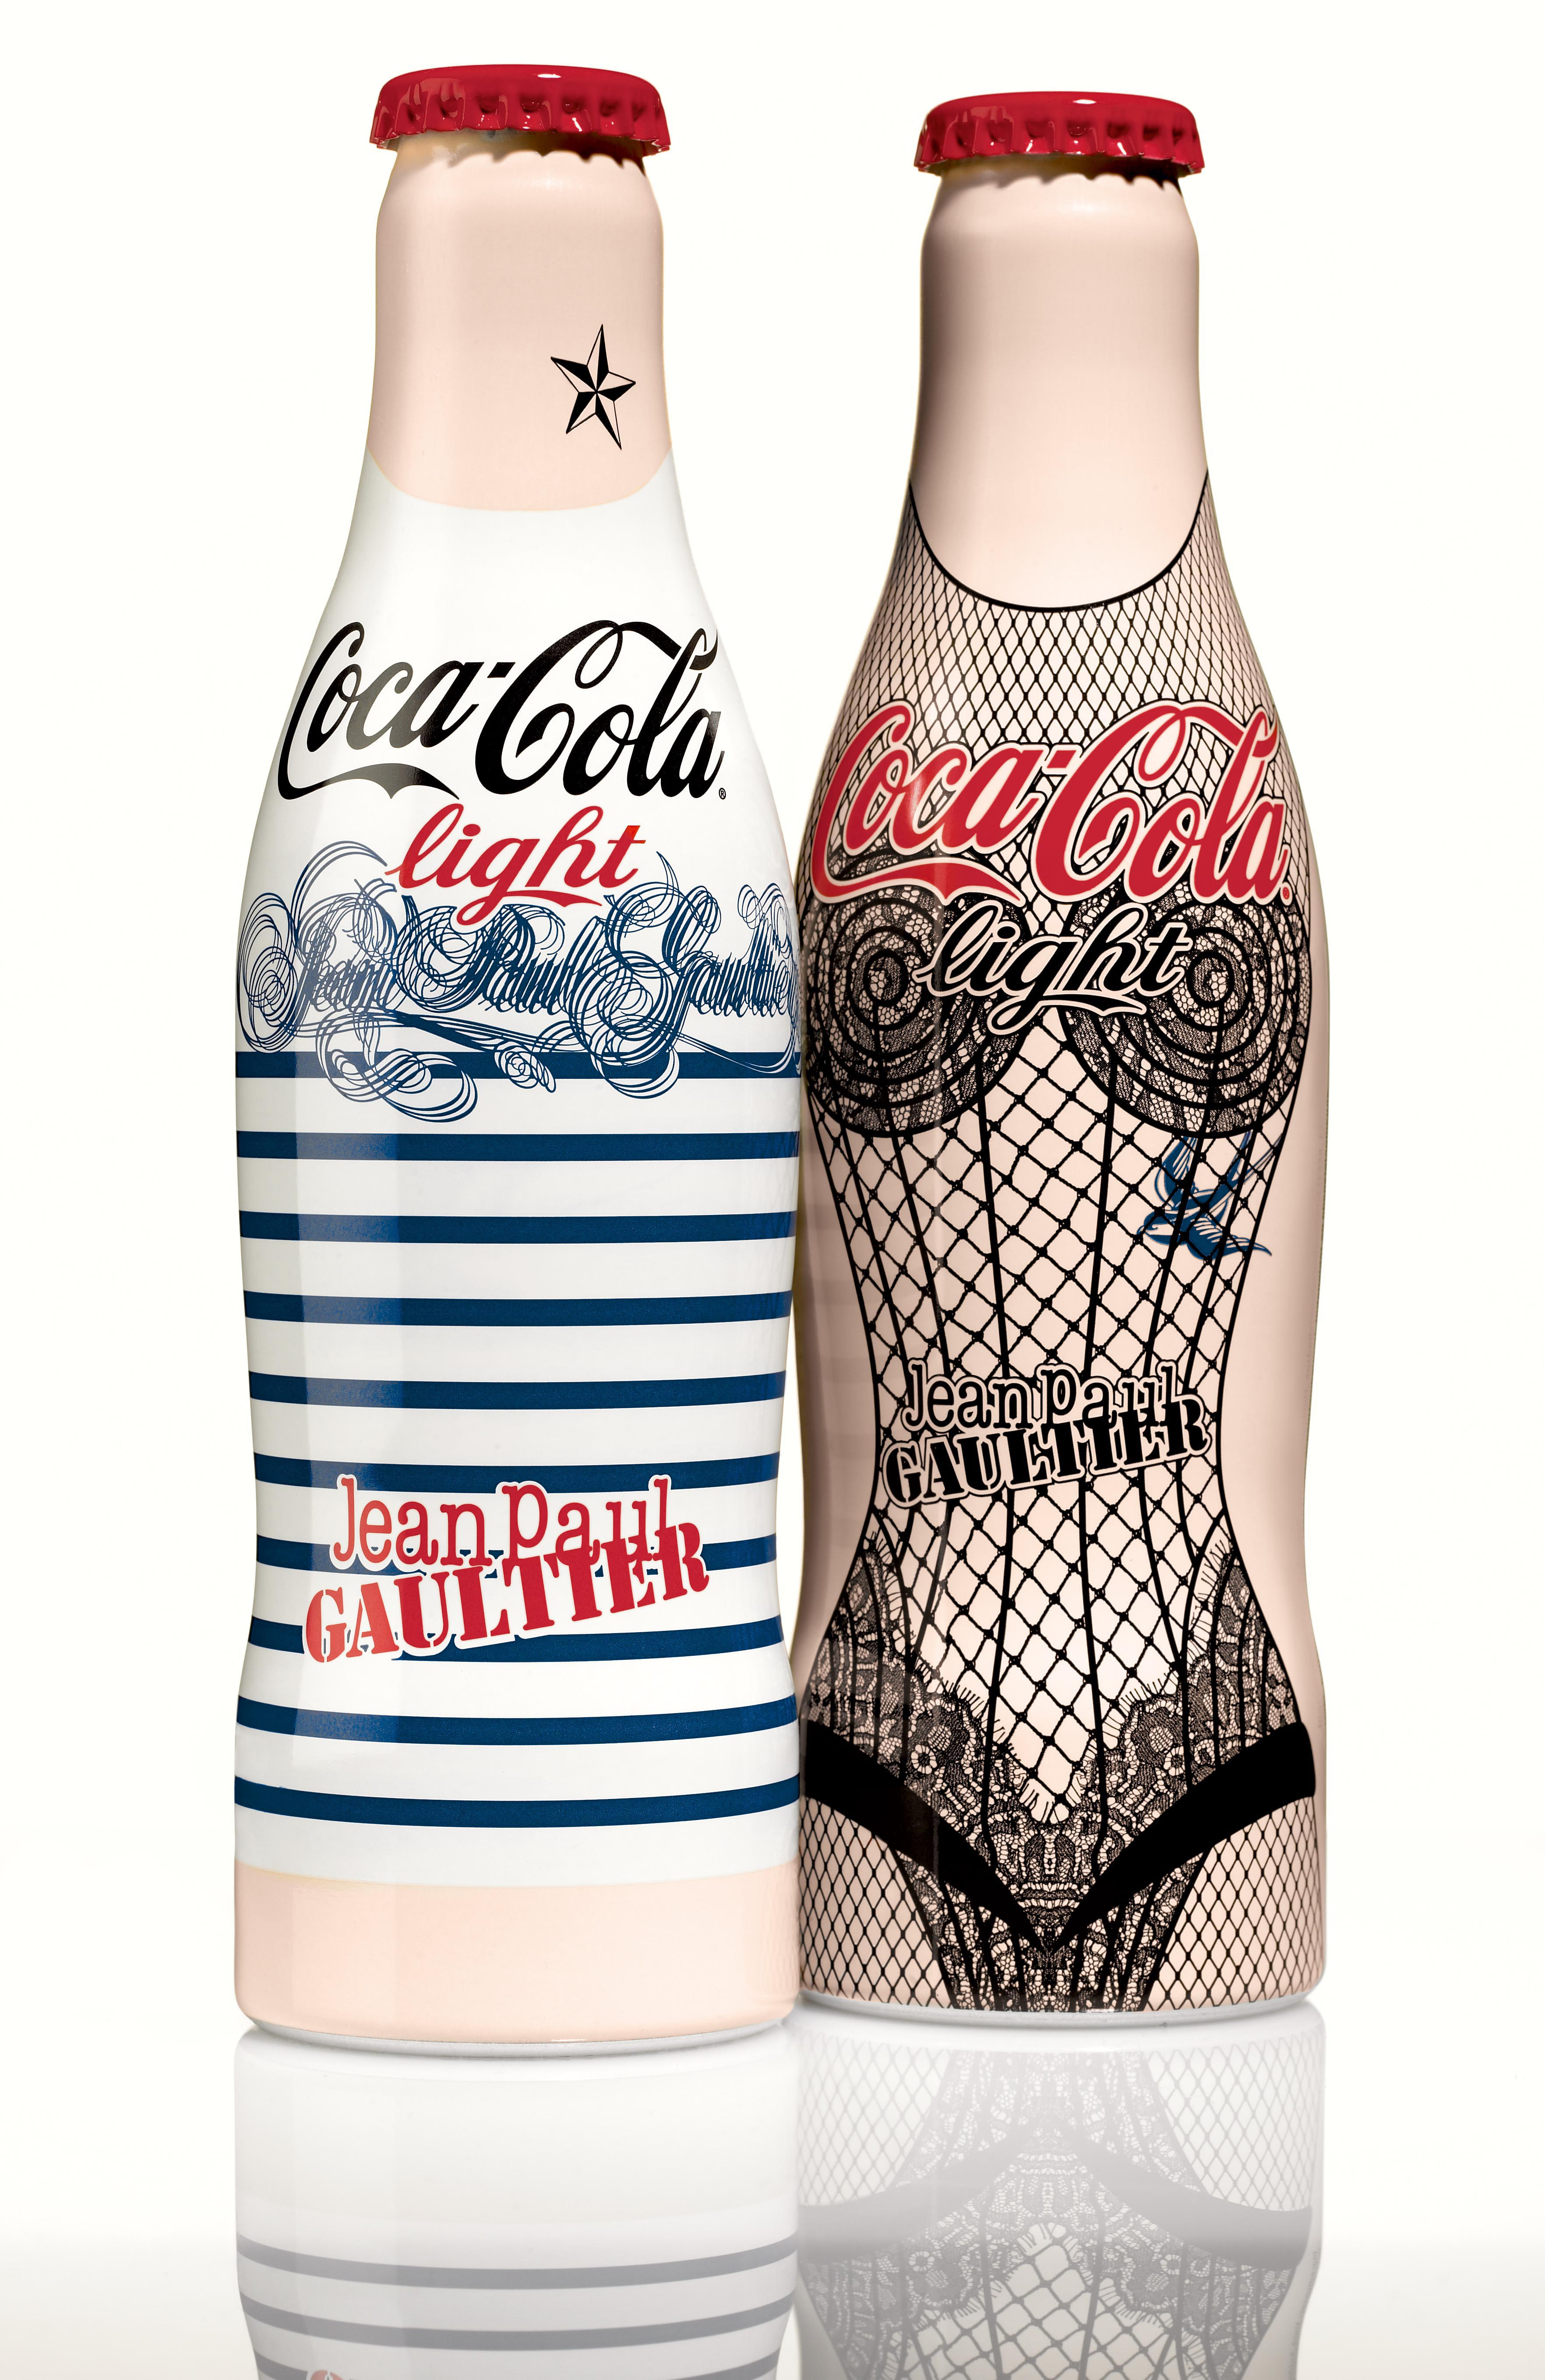 Gaultier Coke bottle wins awards